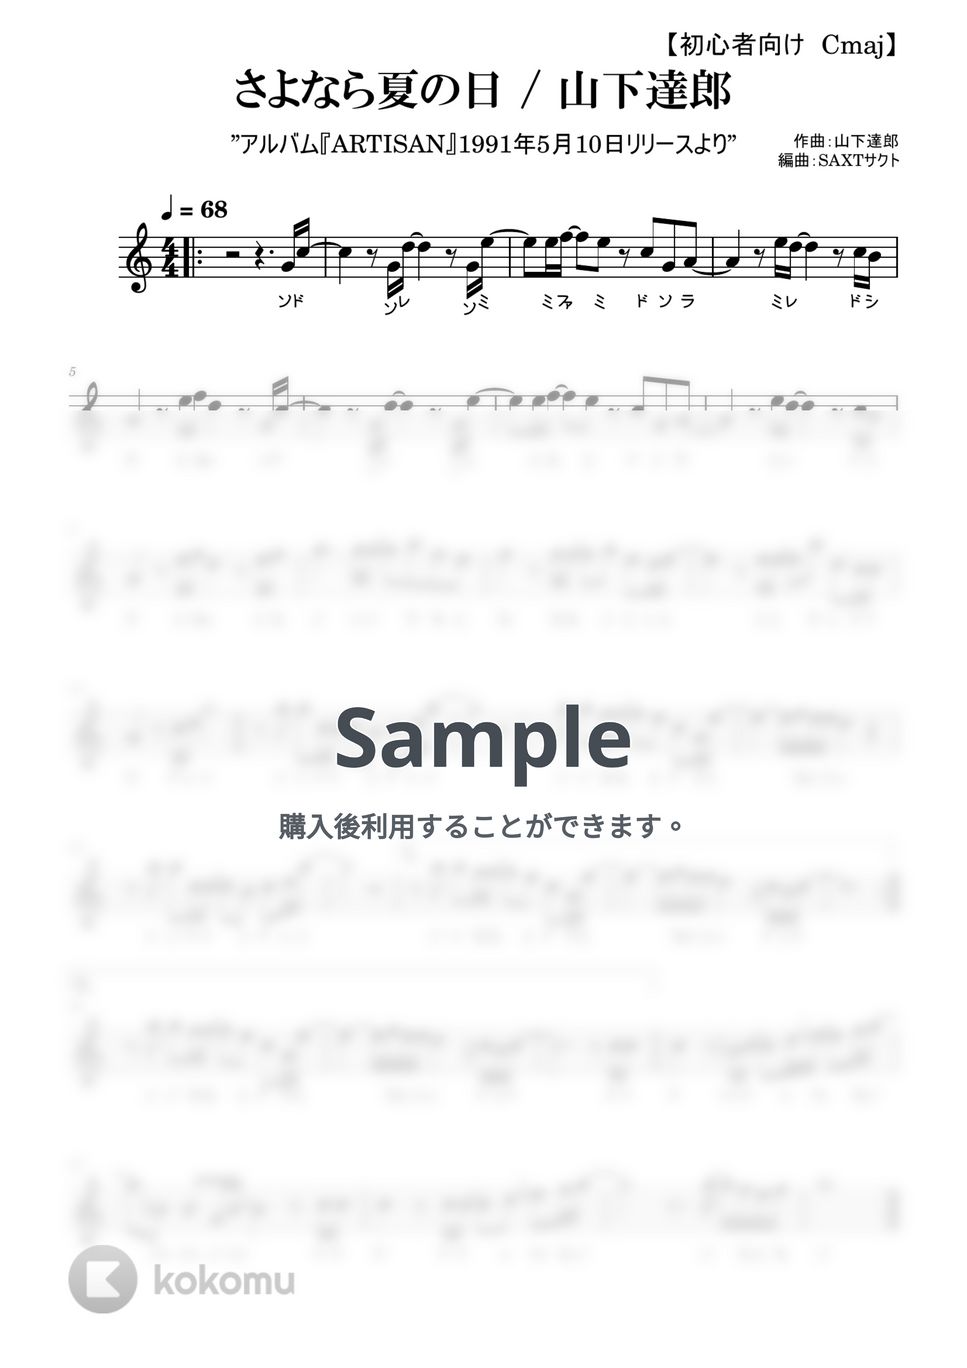 山下達郎 - さよなら夏の日 (めちゃラク譜) by SAXT